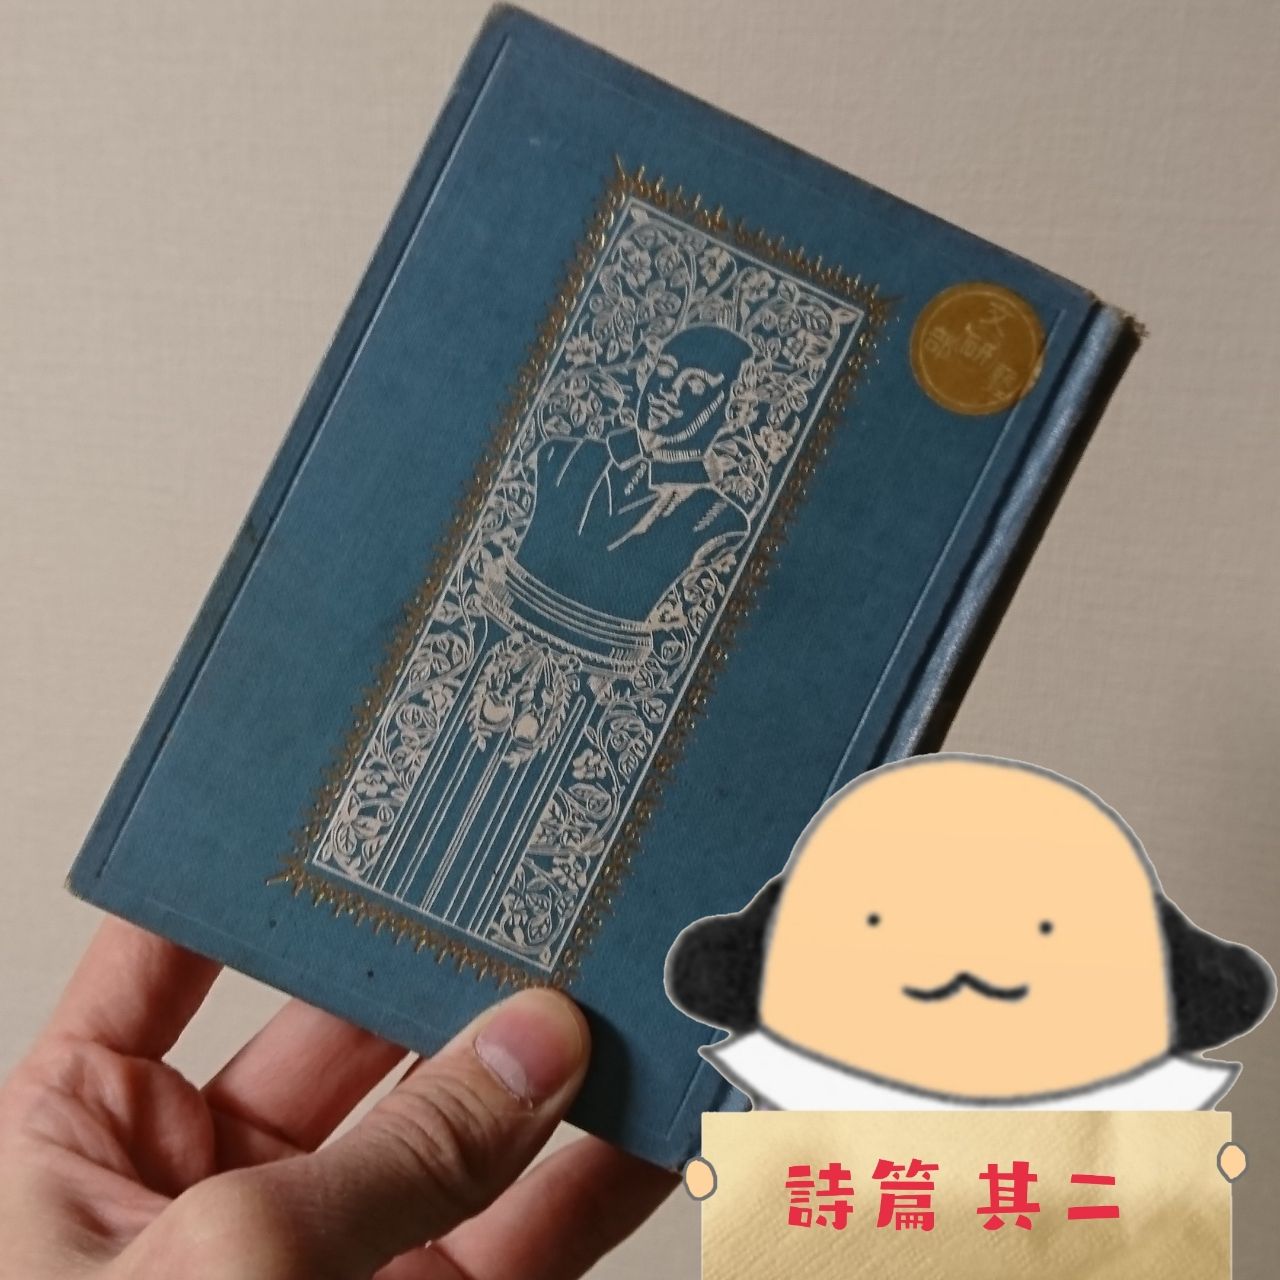 CD【CD】シェイクスピア:戯曲、詩、ソネット朗読全集(100CD)／ウィリアム・シェイクスピア